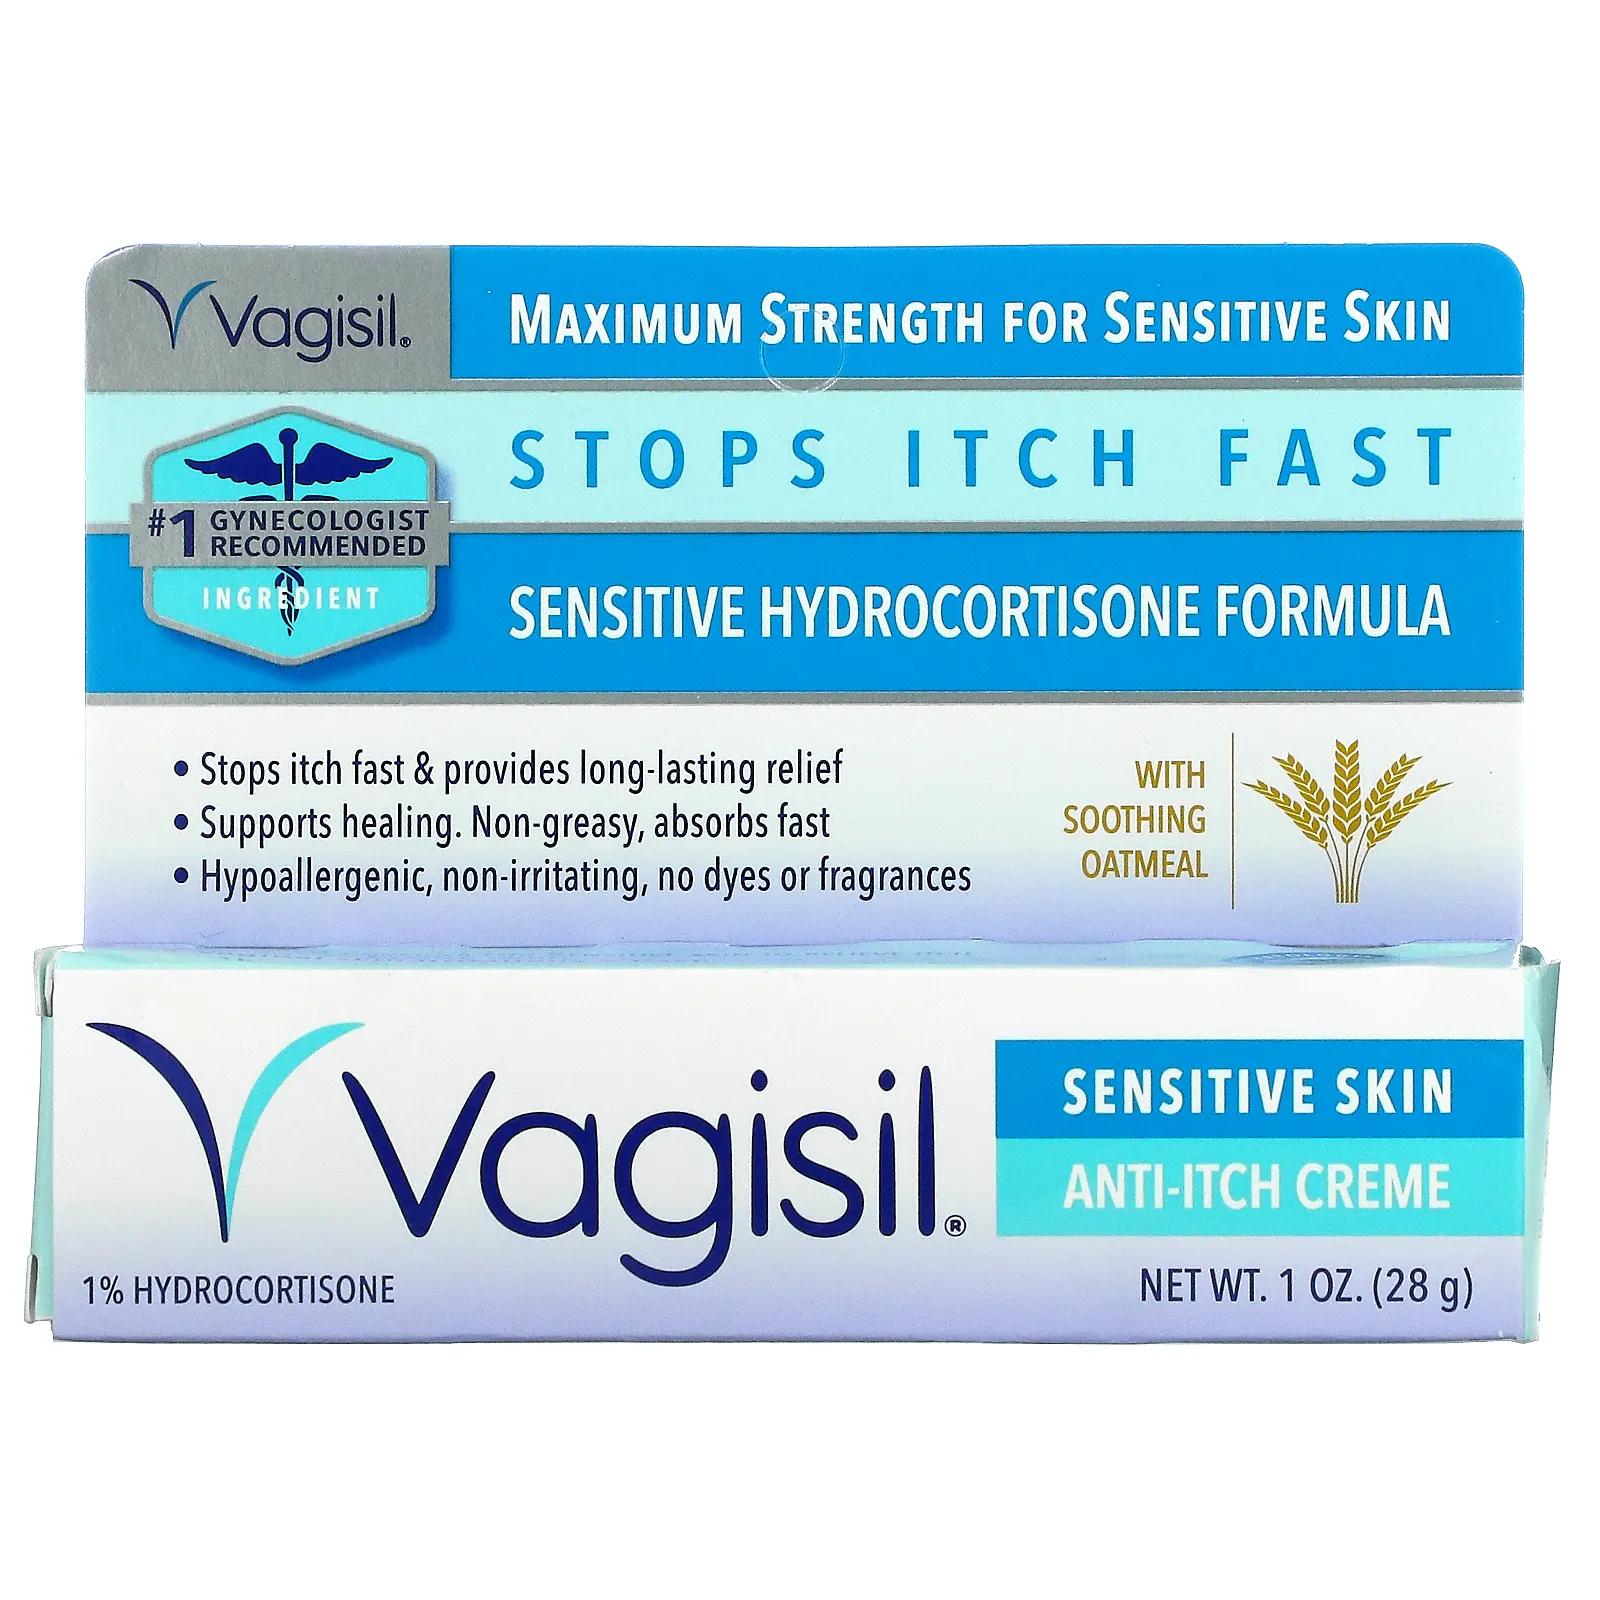 Vagisil Крем против зуда максимальная сила действия для чувствительной кожи 28 г (1 унция) cortizone 10 1% крем против зуда с гидрокортизоном и алоэ максимальная сила действия 56 г 2 унции